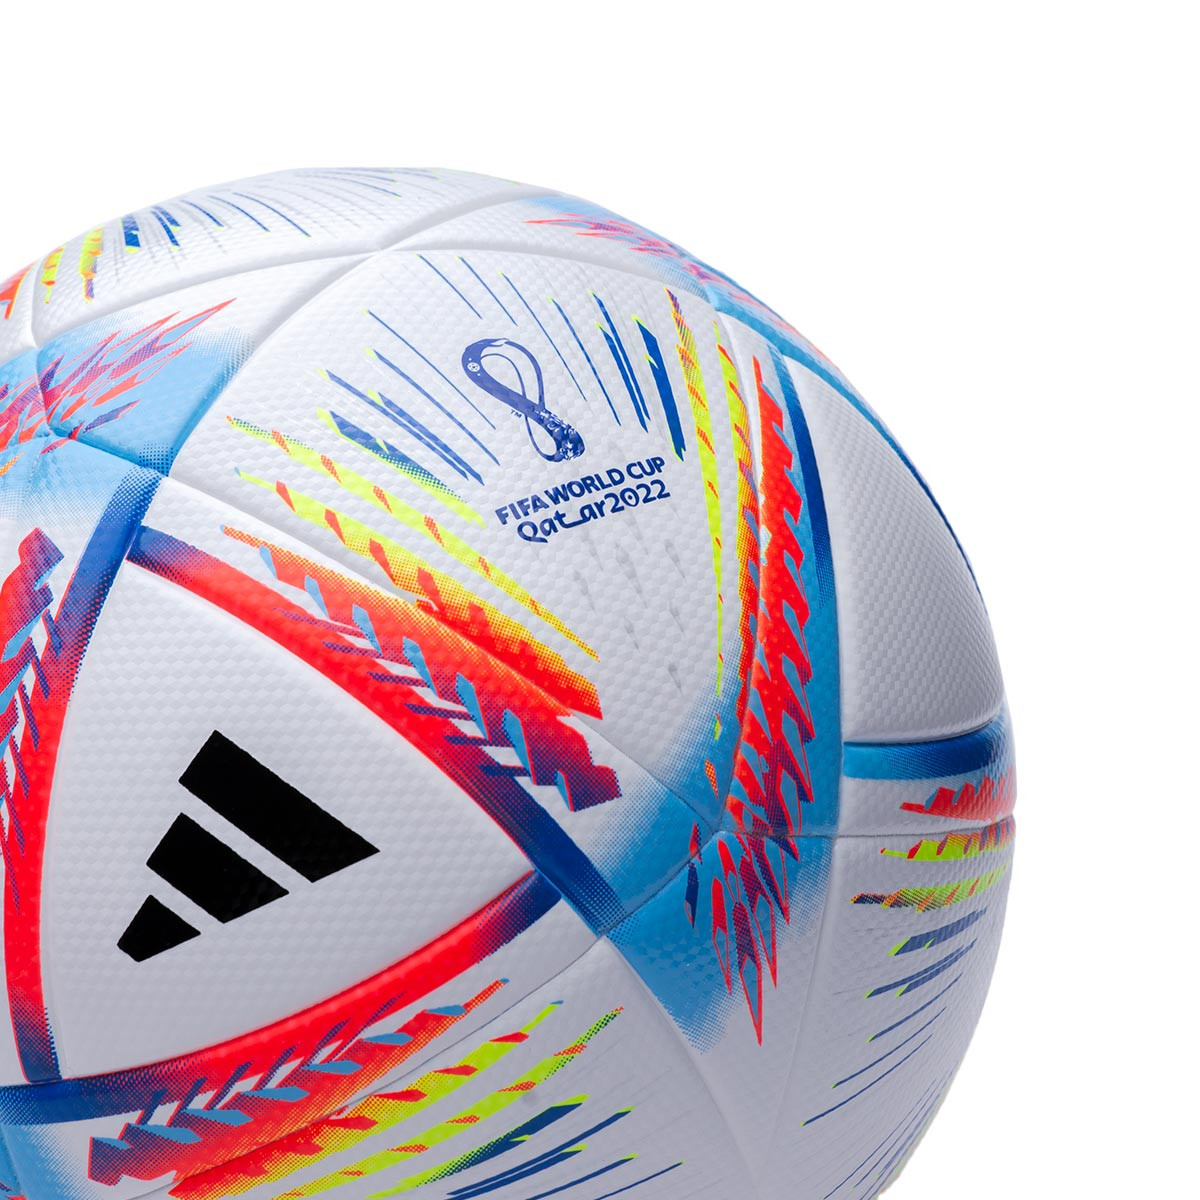 Offizielles Merchandise Kinder Fußball-Set Geschenk Tottenham Hotspur FC Größe 4 Torwarthandschuhe & Fußball